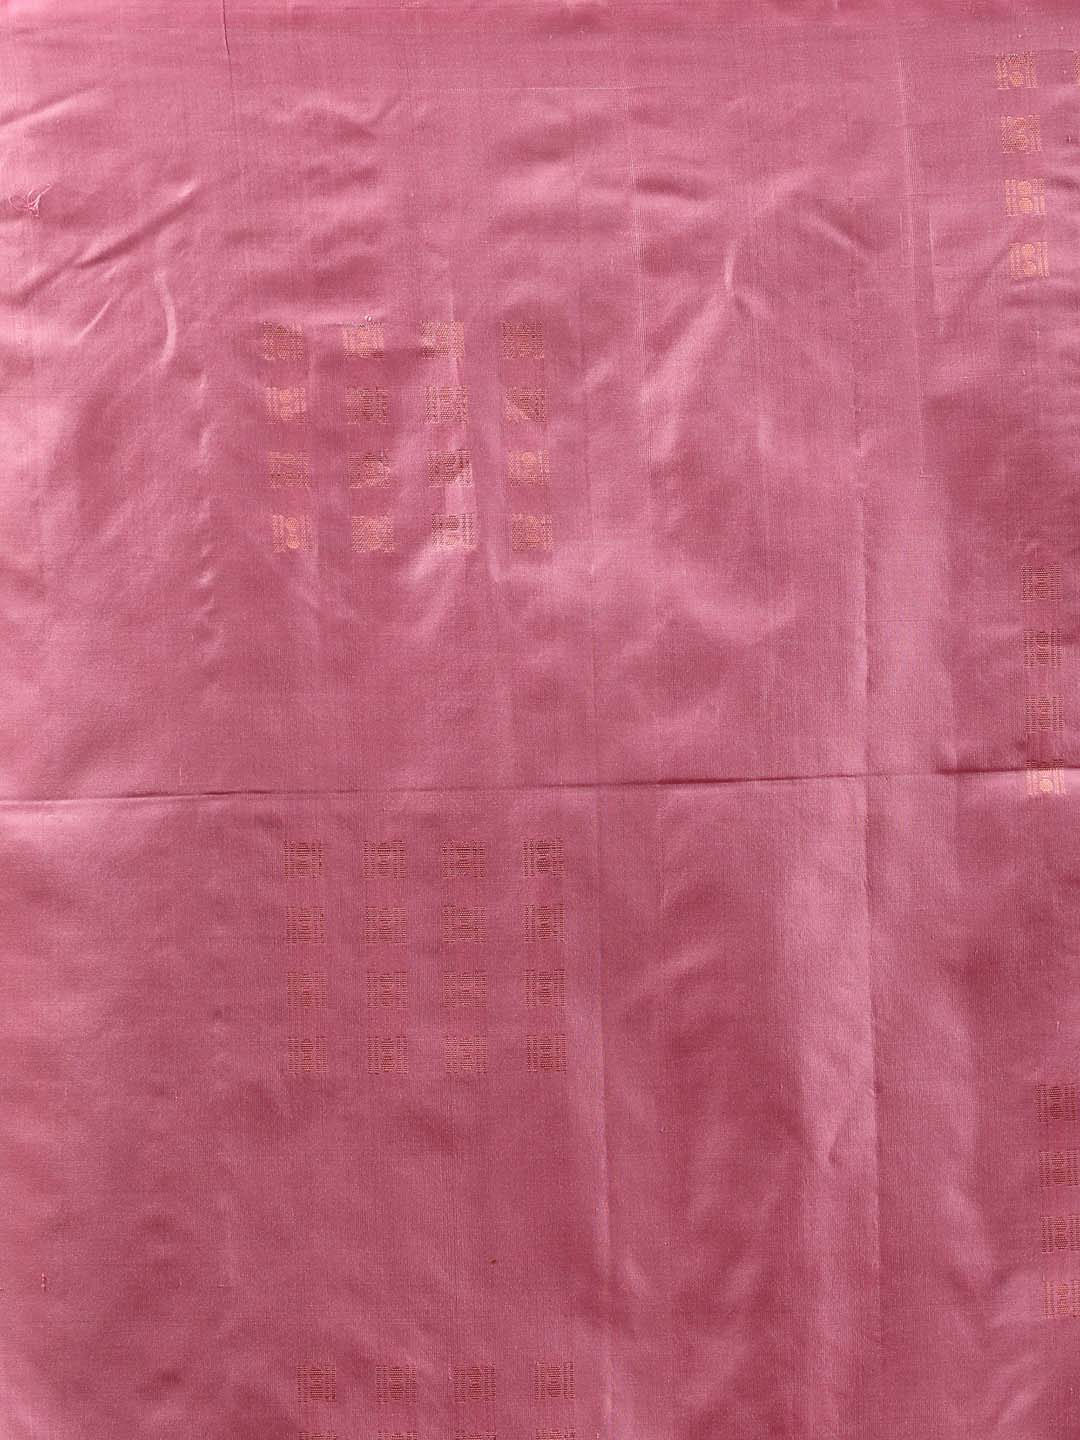 Indethnic Pink Pochampally Pure Silk Handloom Saree - Saree Detail View